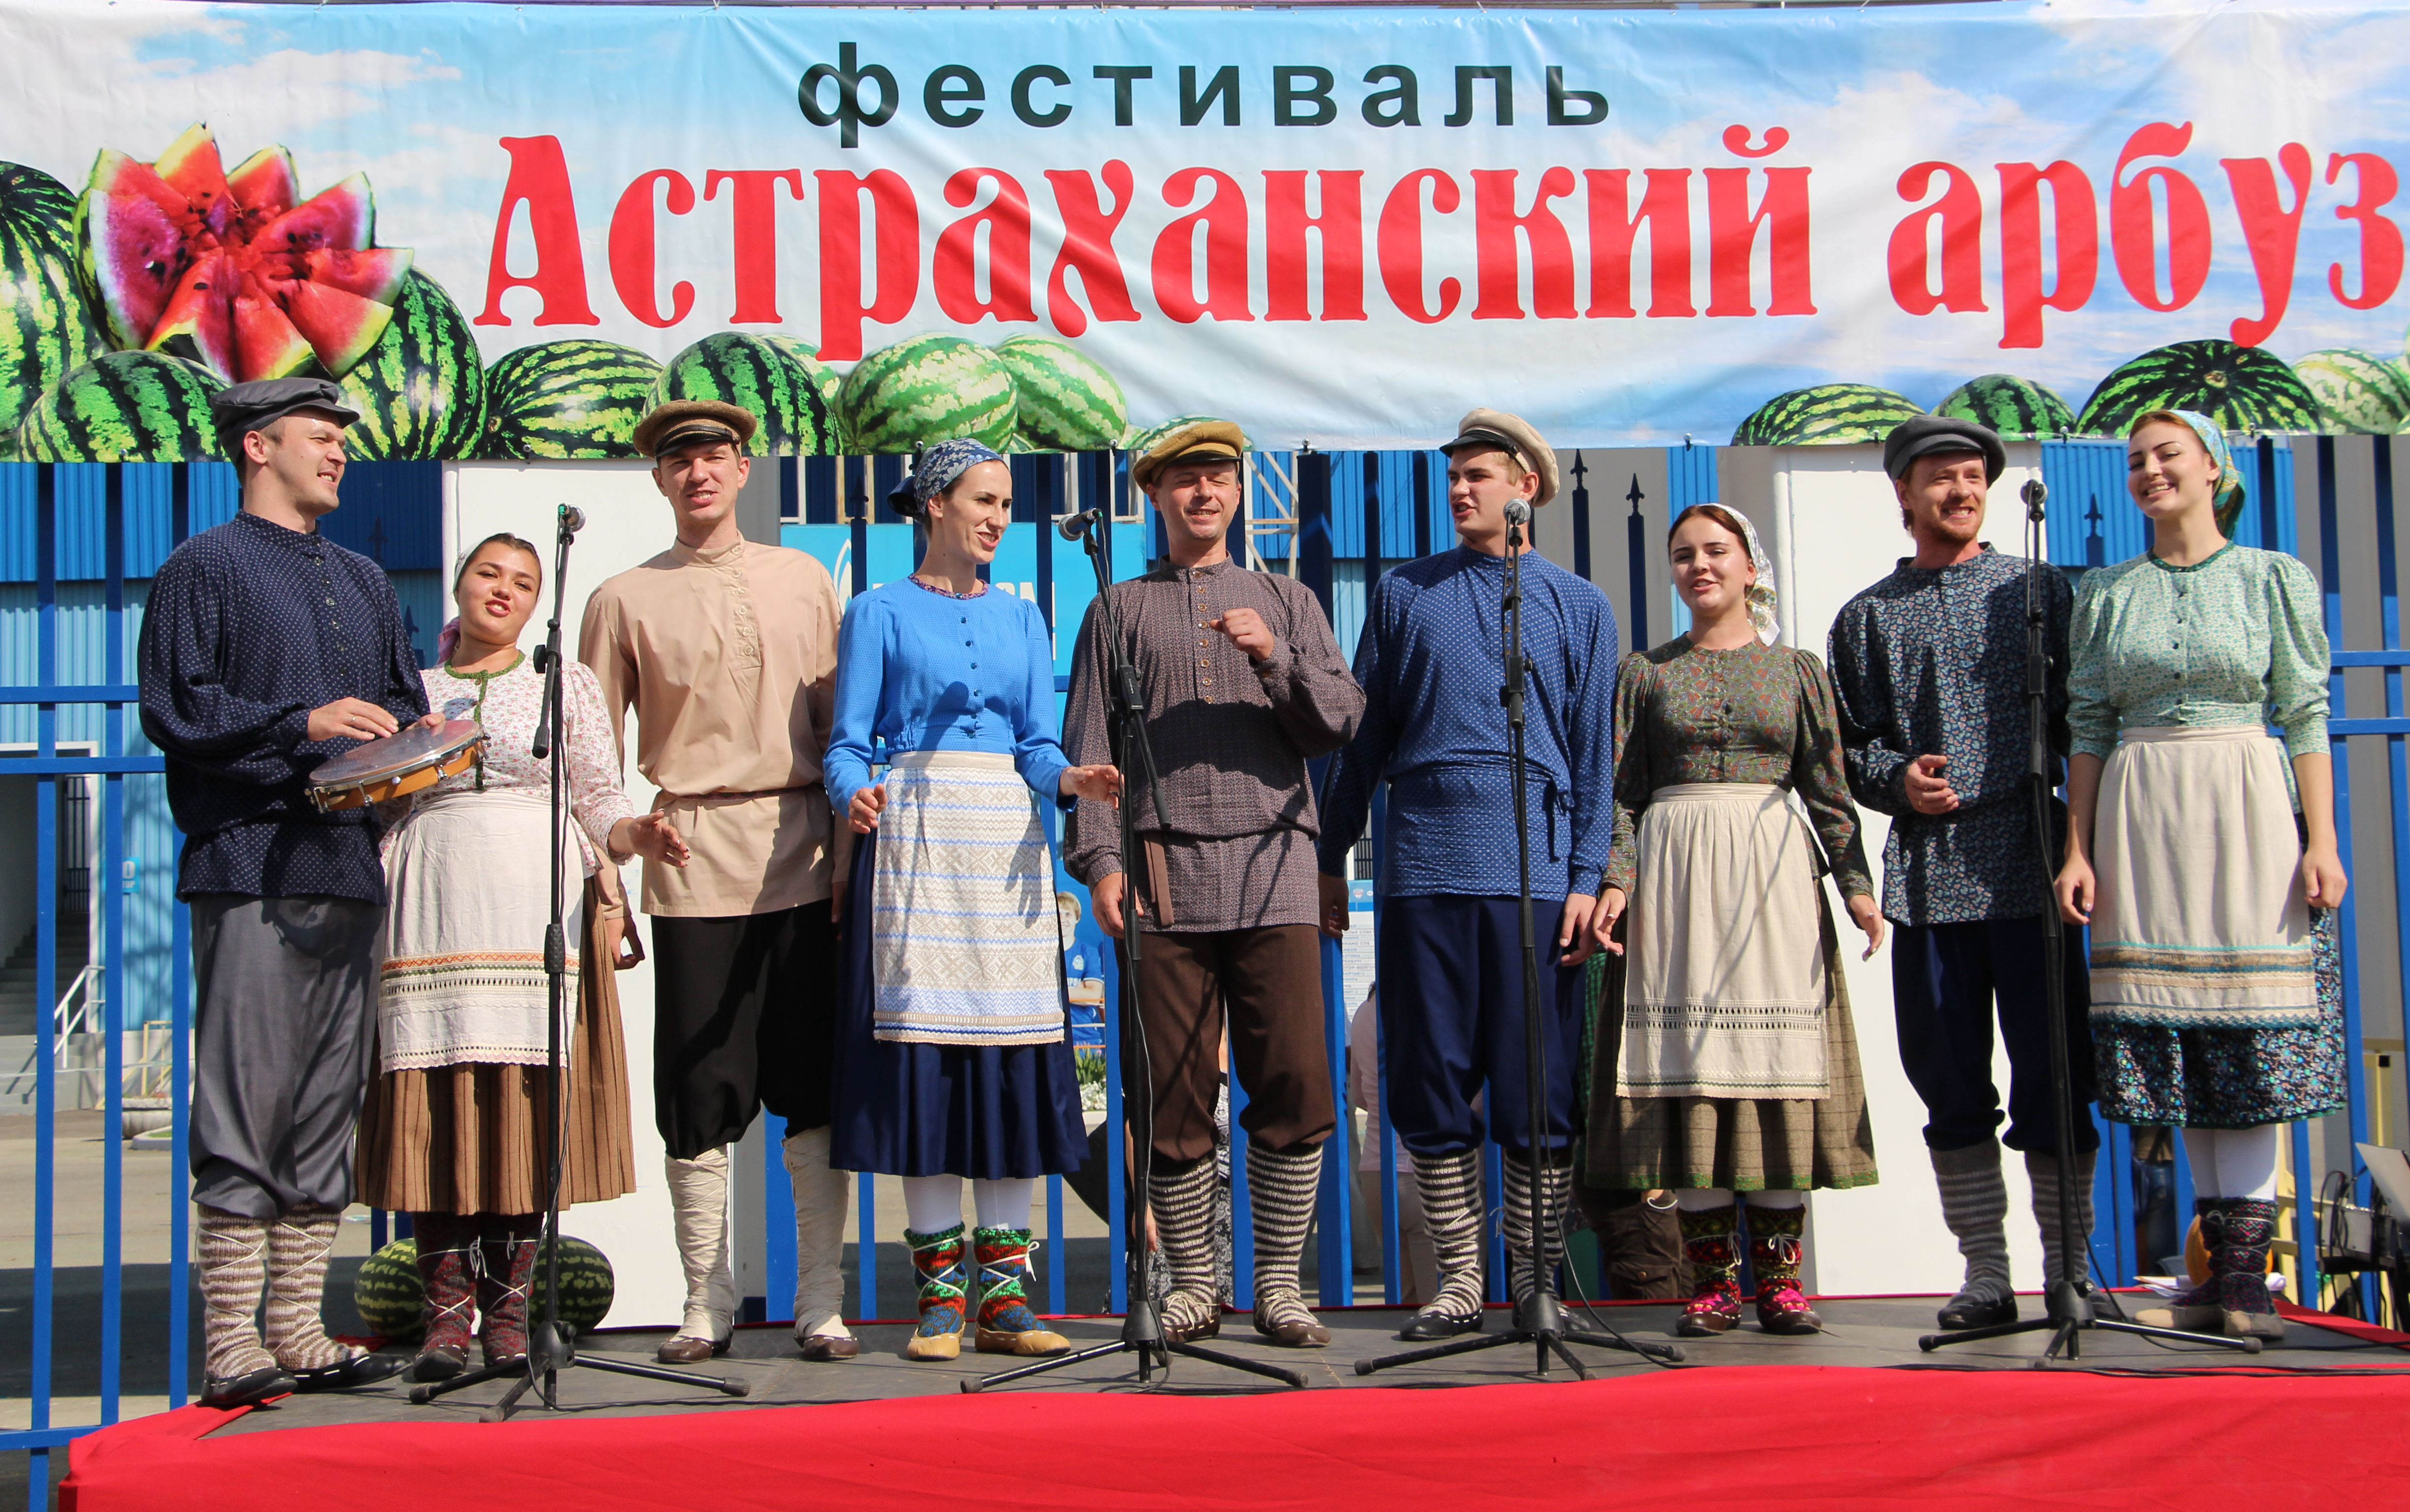 В Астрахани состоялся фестиваль арбуза